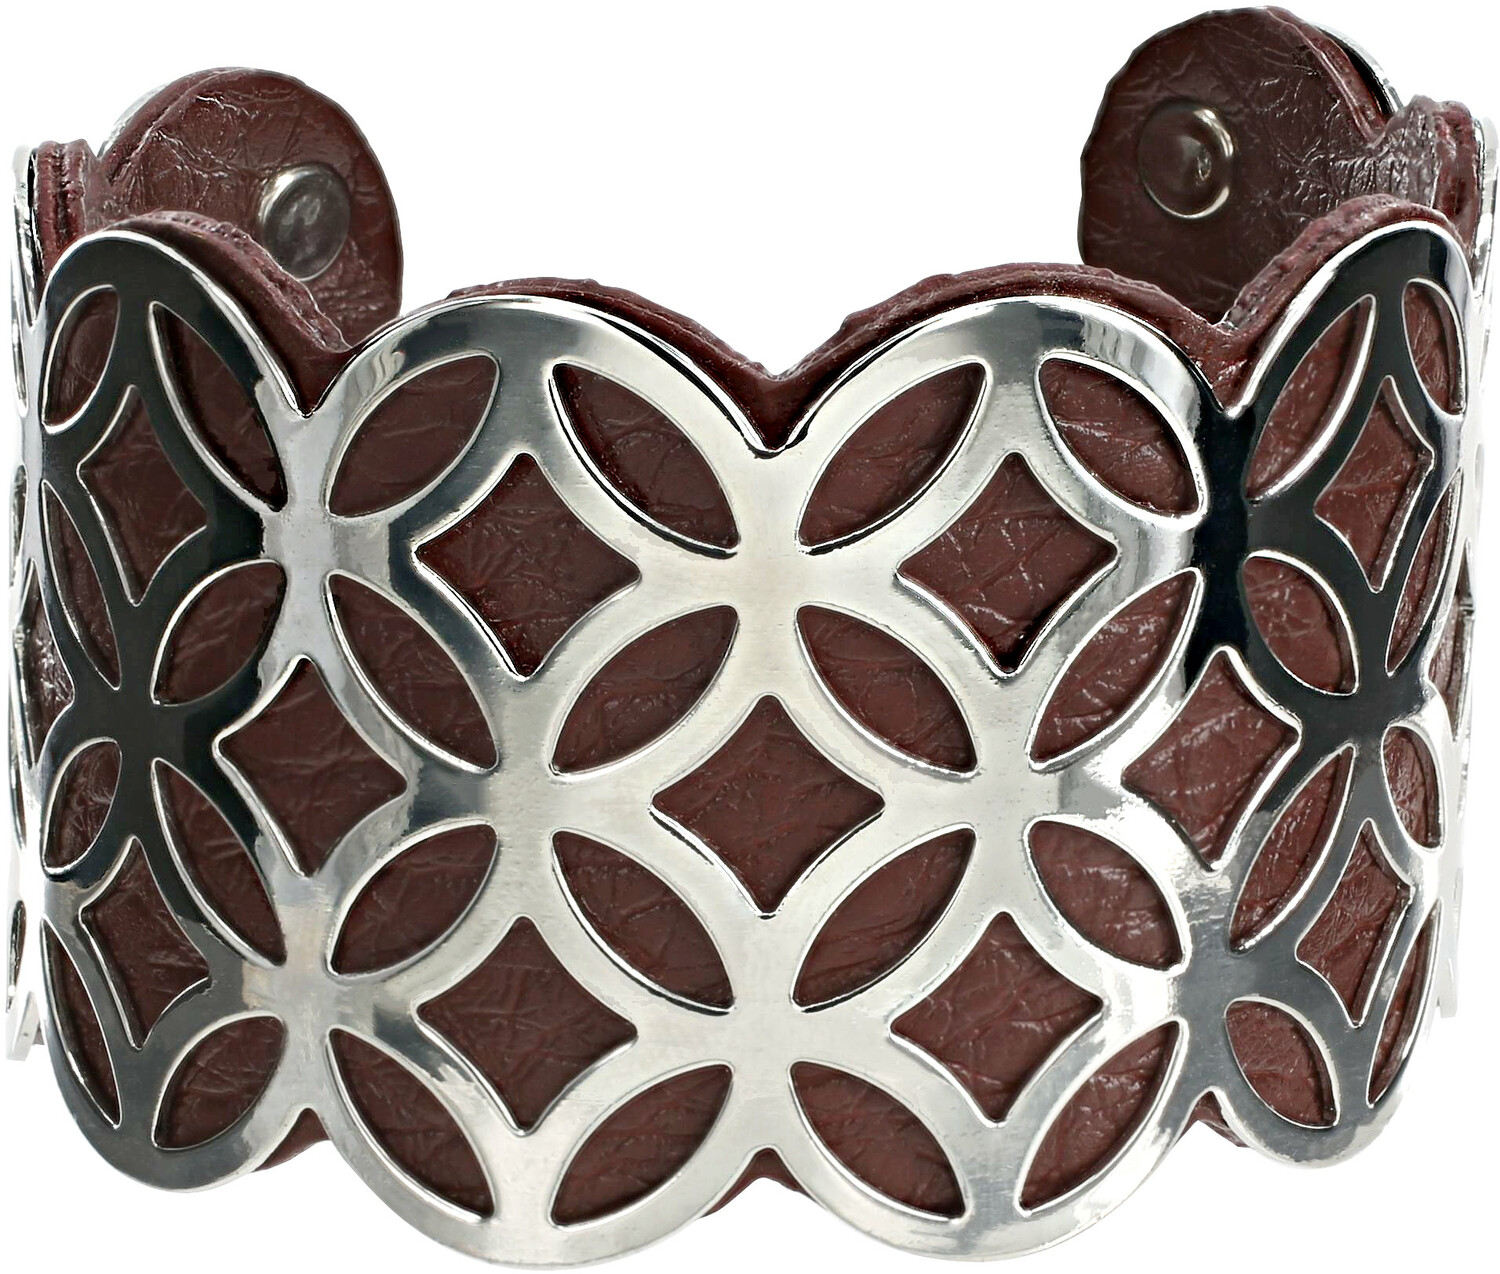 Silver & Chocolate by H2Z Filigree Jewelry - Silver & Chocolate - 1.75" Geometric Cuff Bracelet